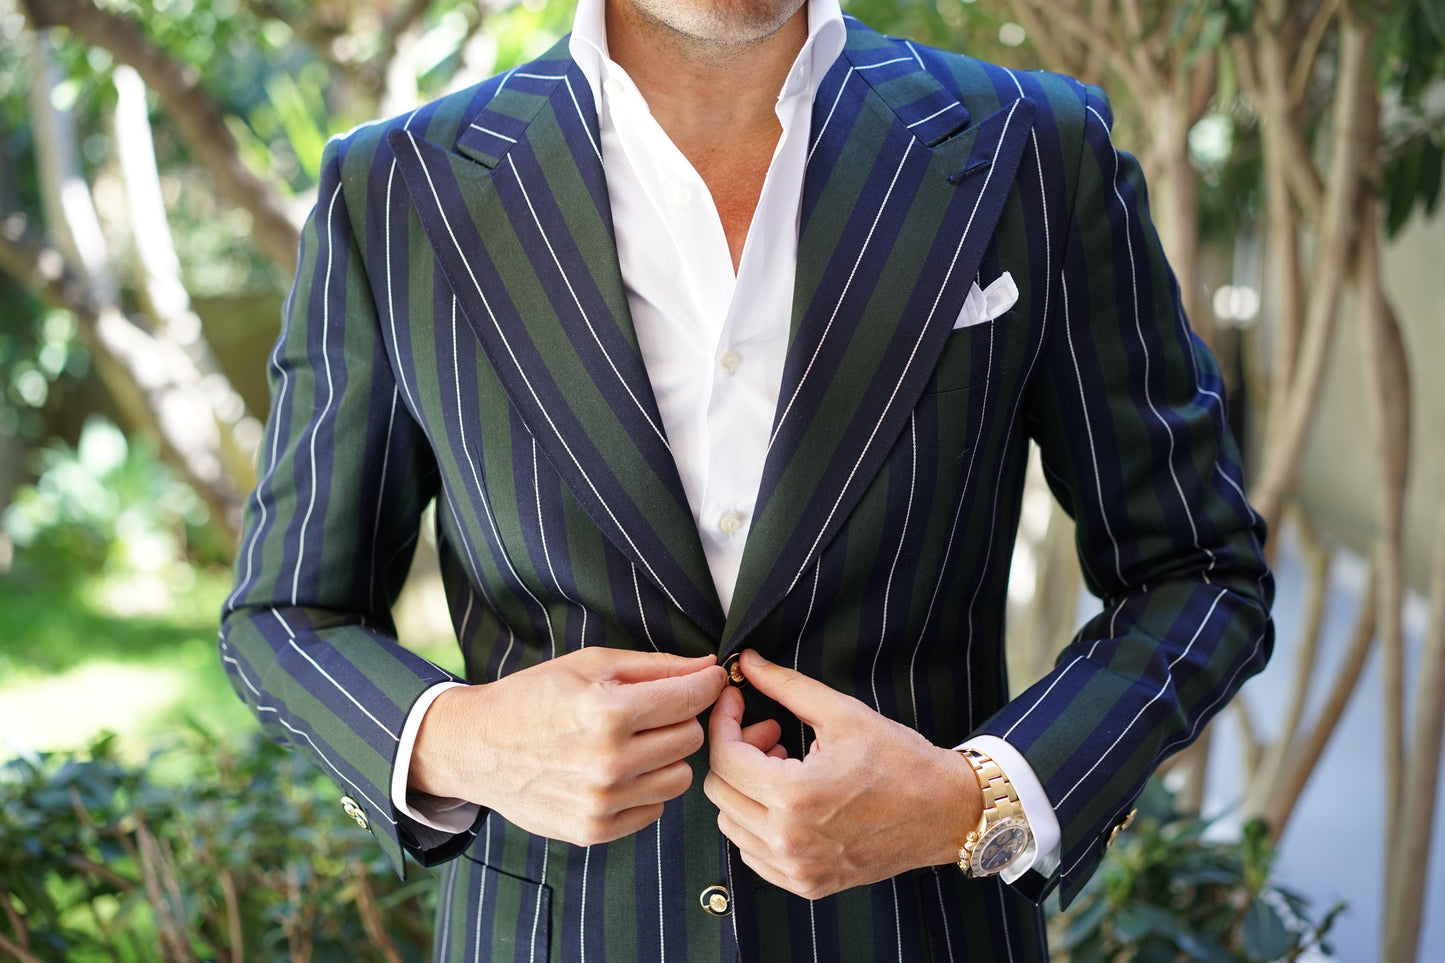 Monte Carlo Stripe Jacket Luxury Line